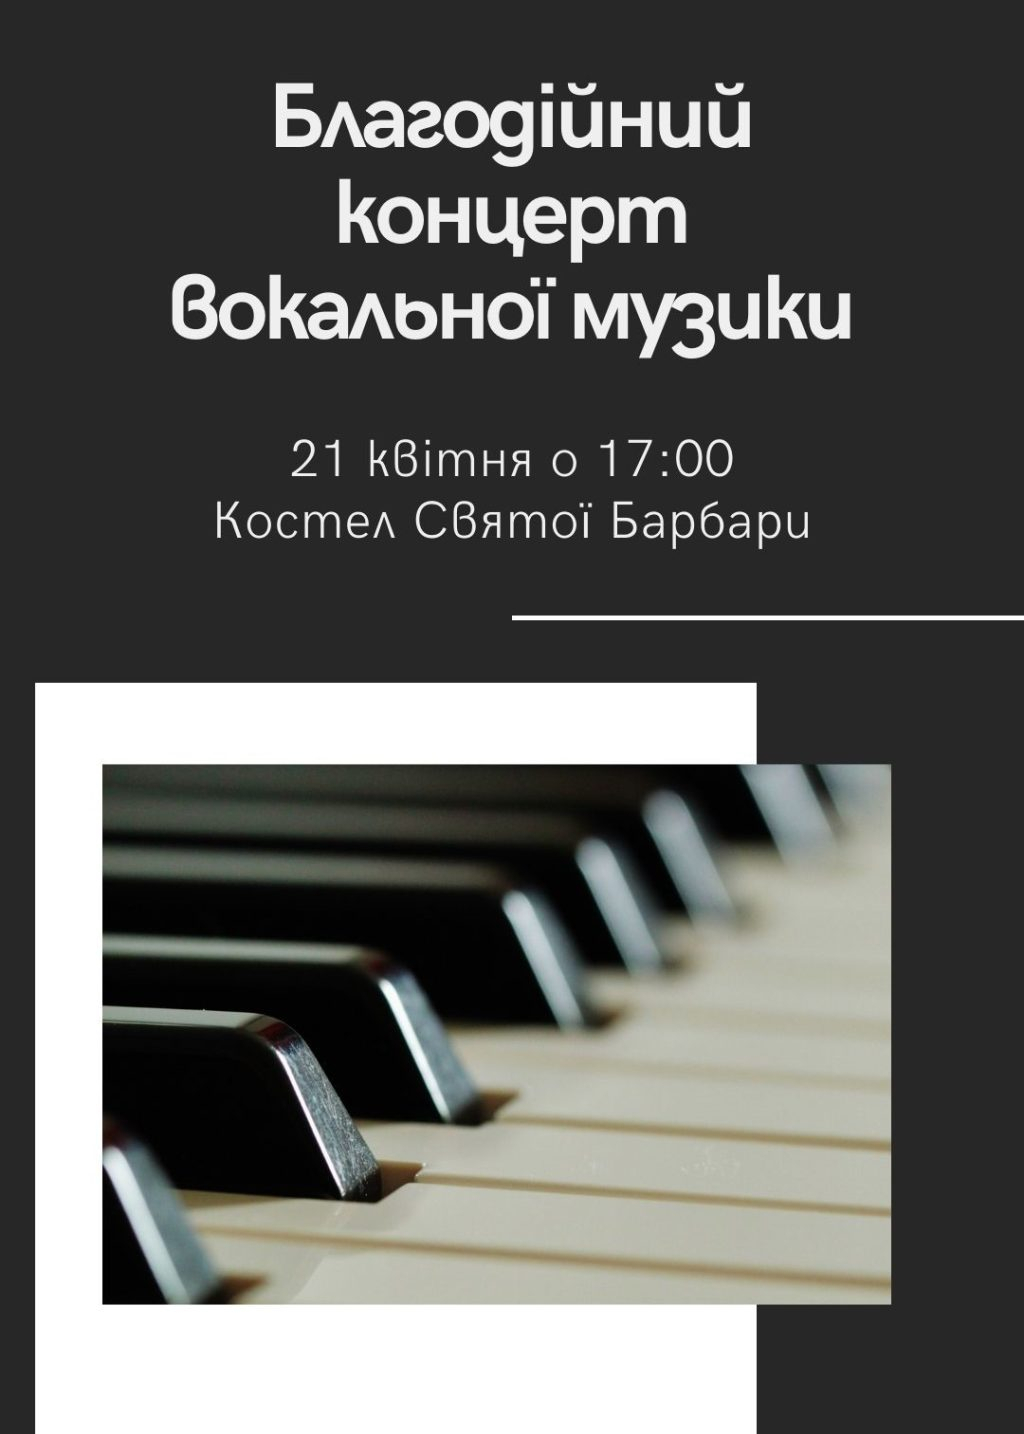 У Бориславі відбудеться благодійний концерт вокальної музики